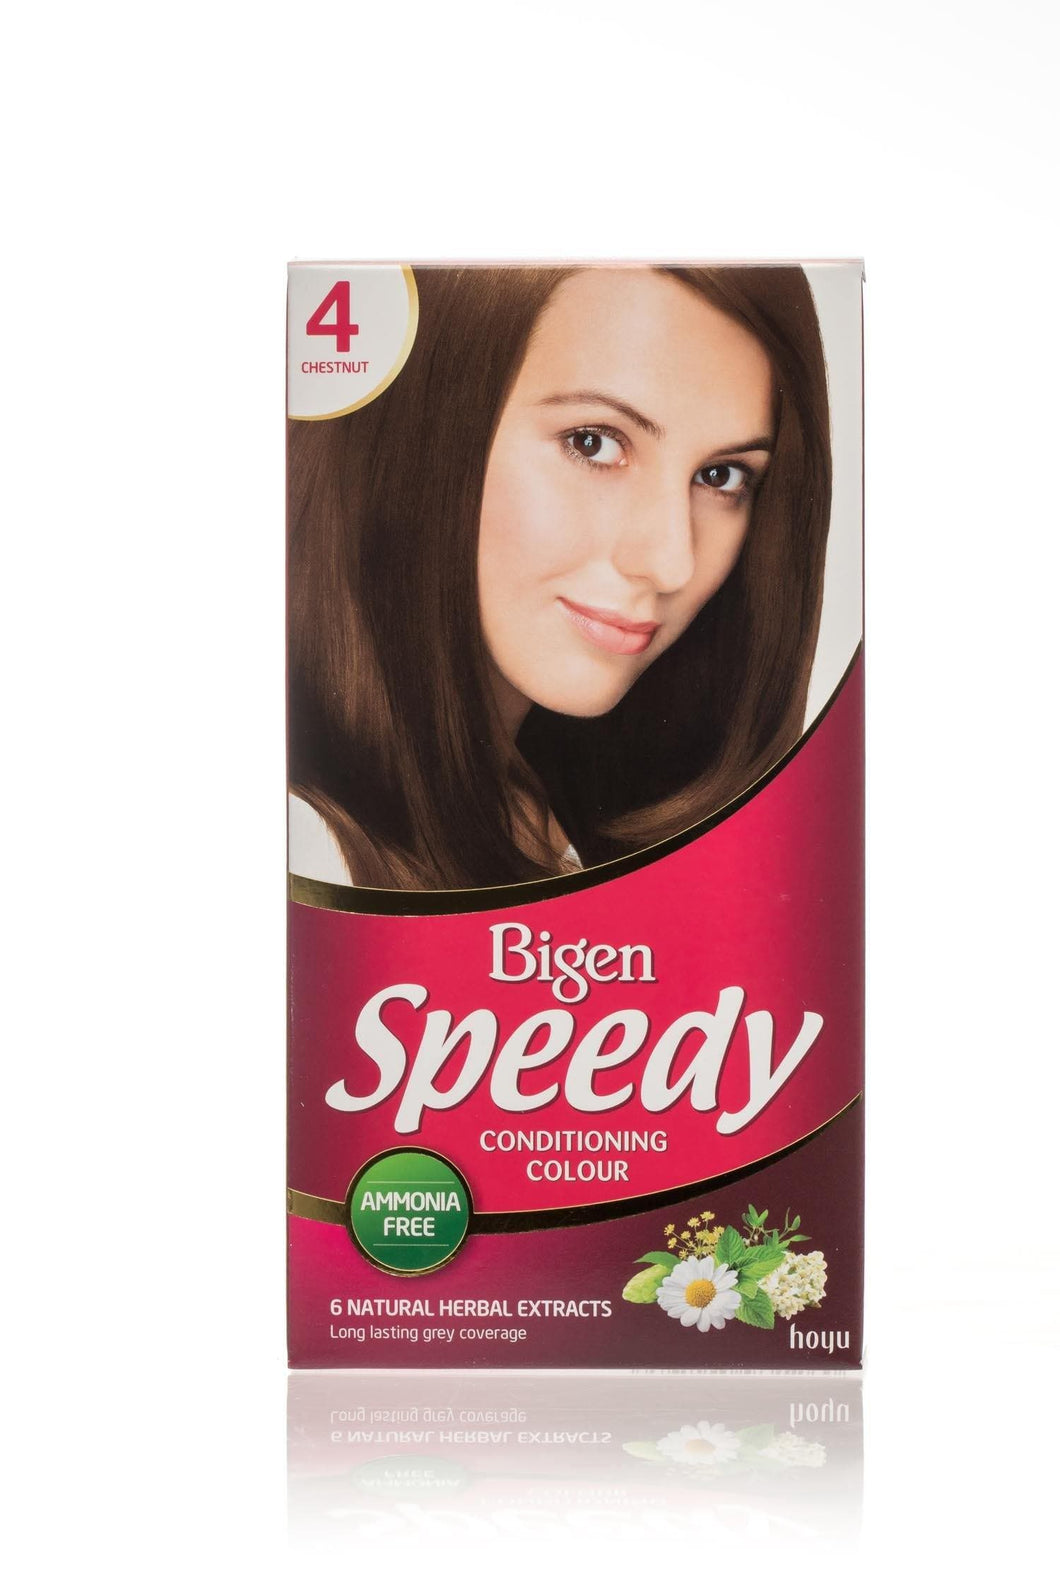 Bigen Women's Speedy Conditioning Colour - 4 - Chestnut - Bigen-shop